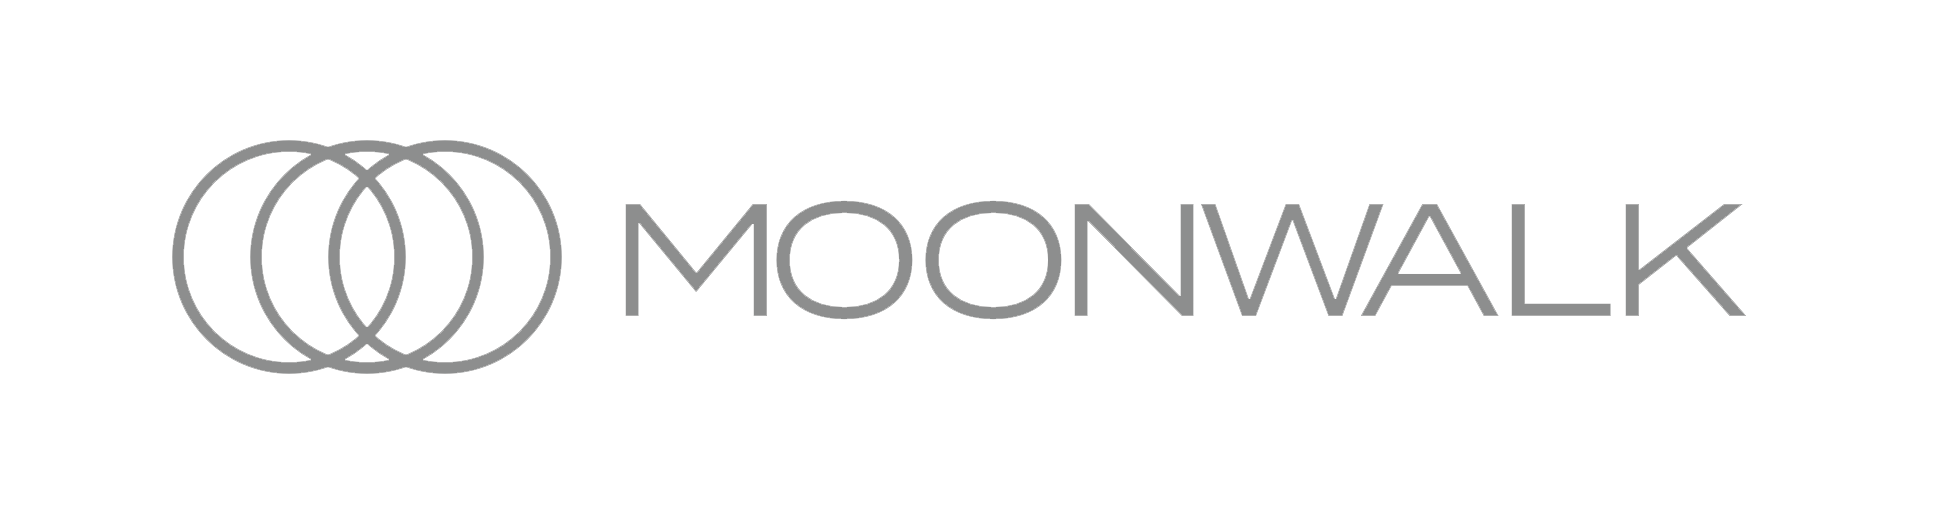 Moonwalk logo